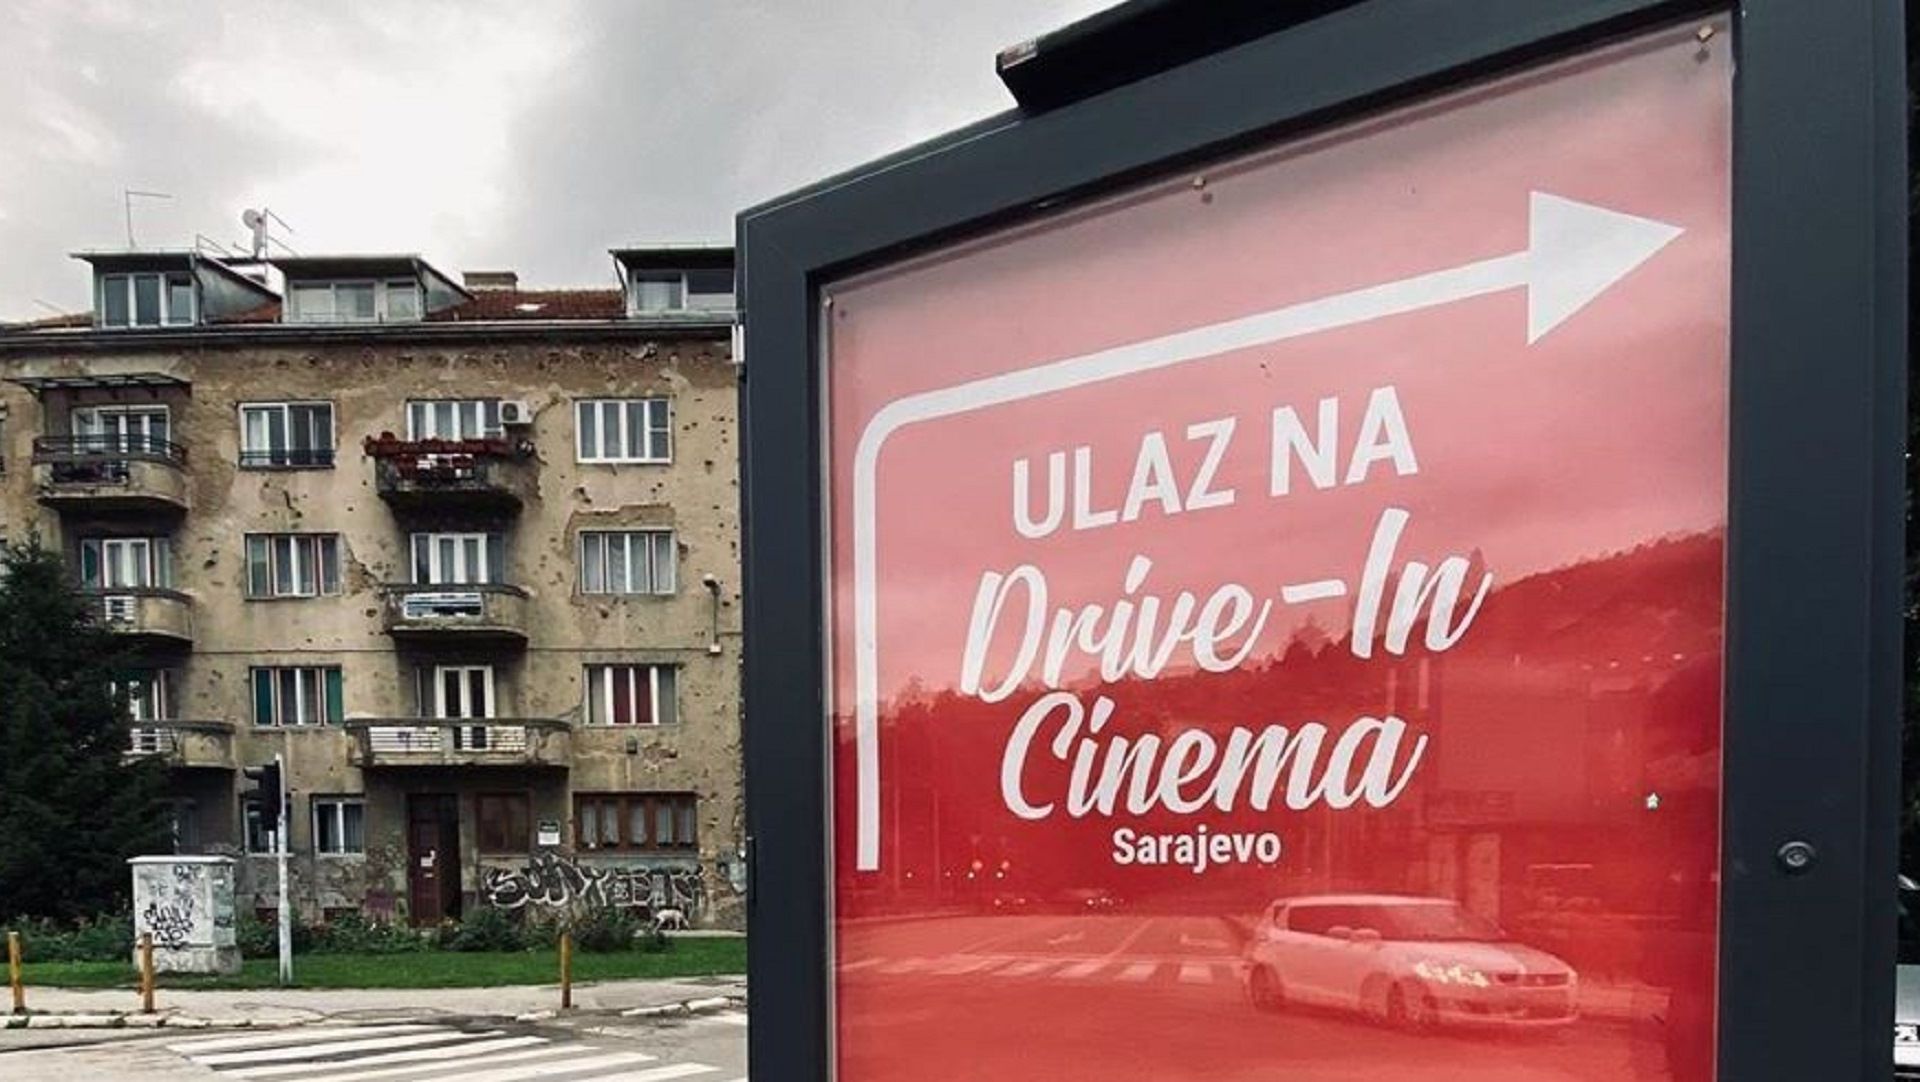 Drive-in cinema in Sarajevo from June 24 to 28.